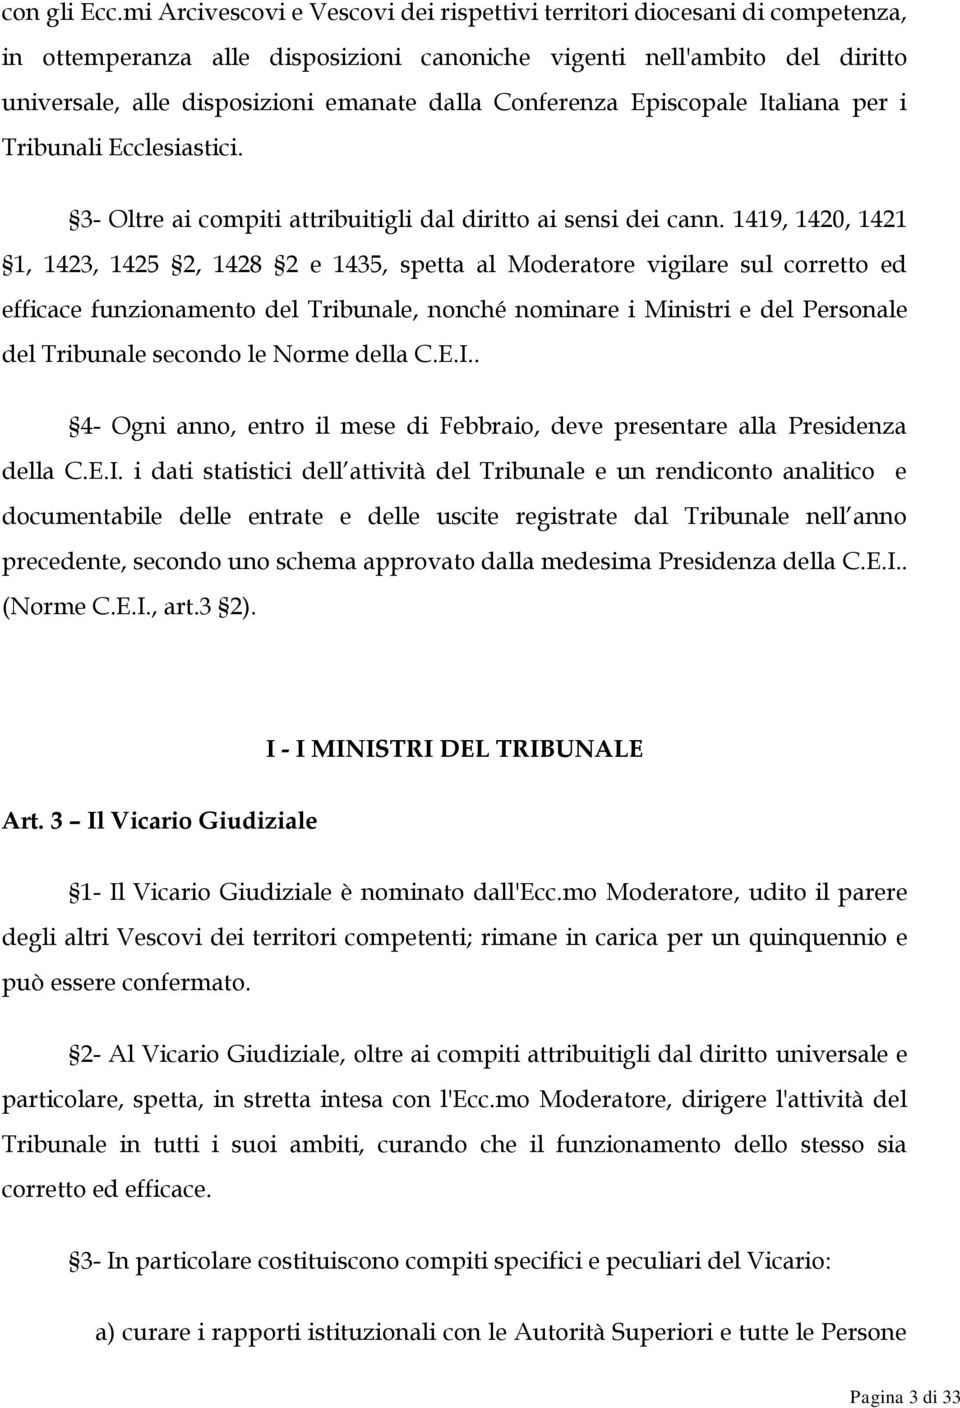 Conferenza Episcopale Italiana per i Tribunali Ecclesiastici. 3- Oltre ai compiti attribuitigli dal diritto ai sensi dei cann.